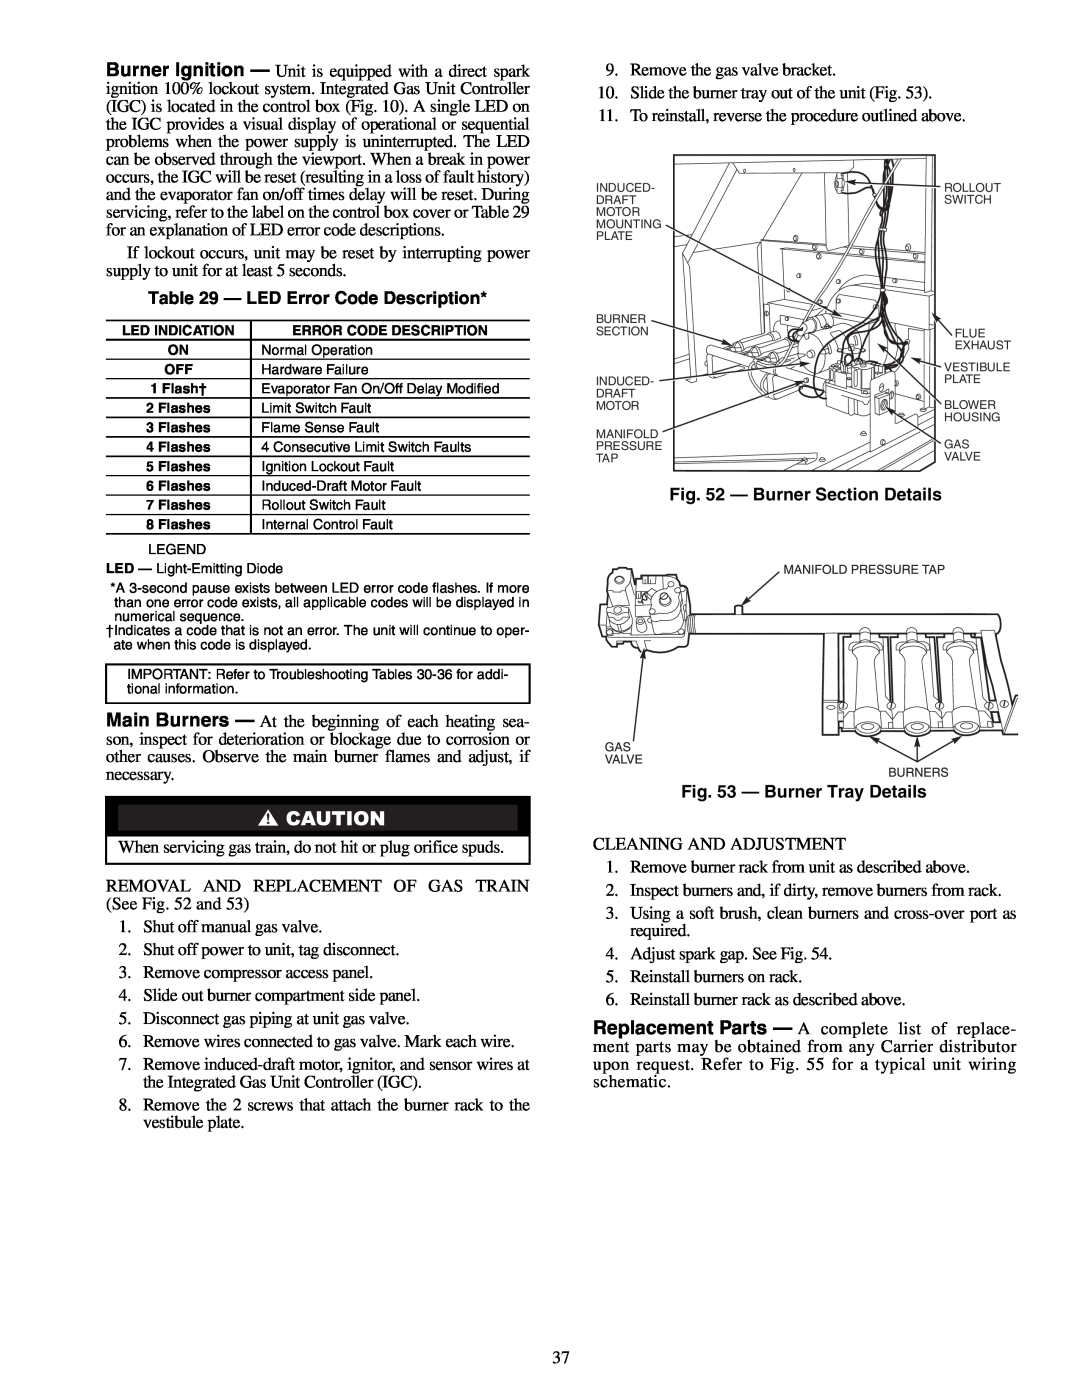 Carrier 48HJD005-007 specifications LED Error Code Description, Burner Section Details - Burner Tray Details 